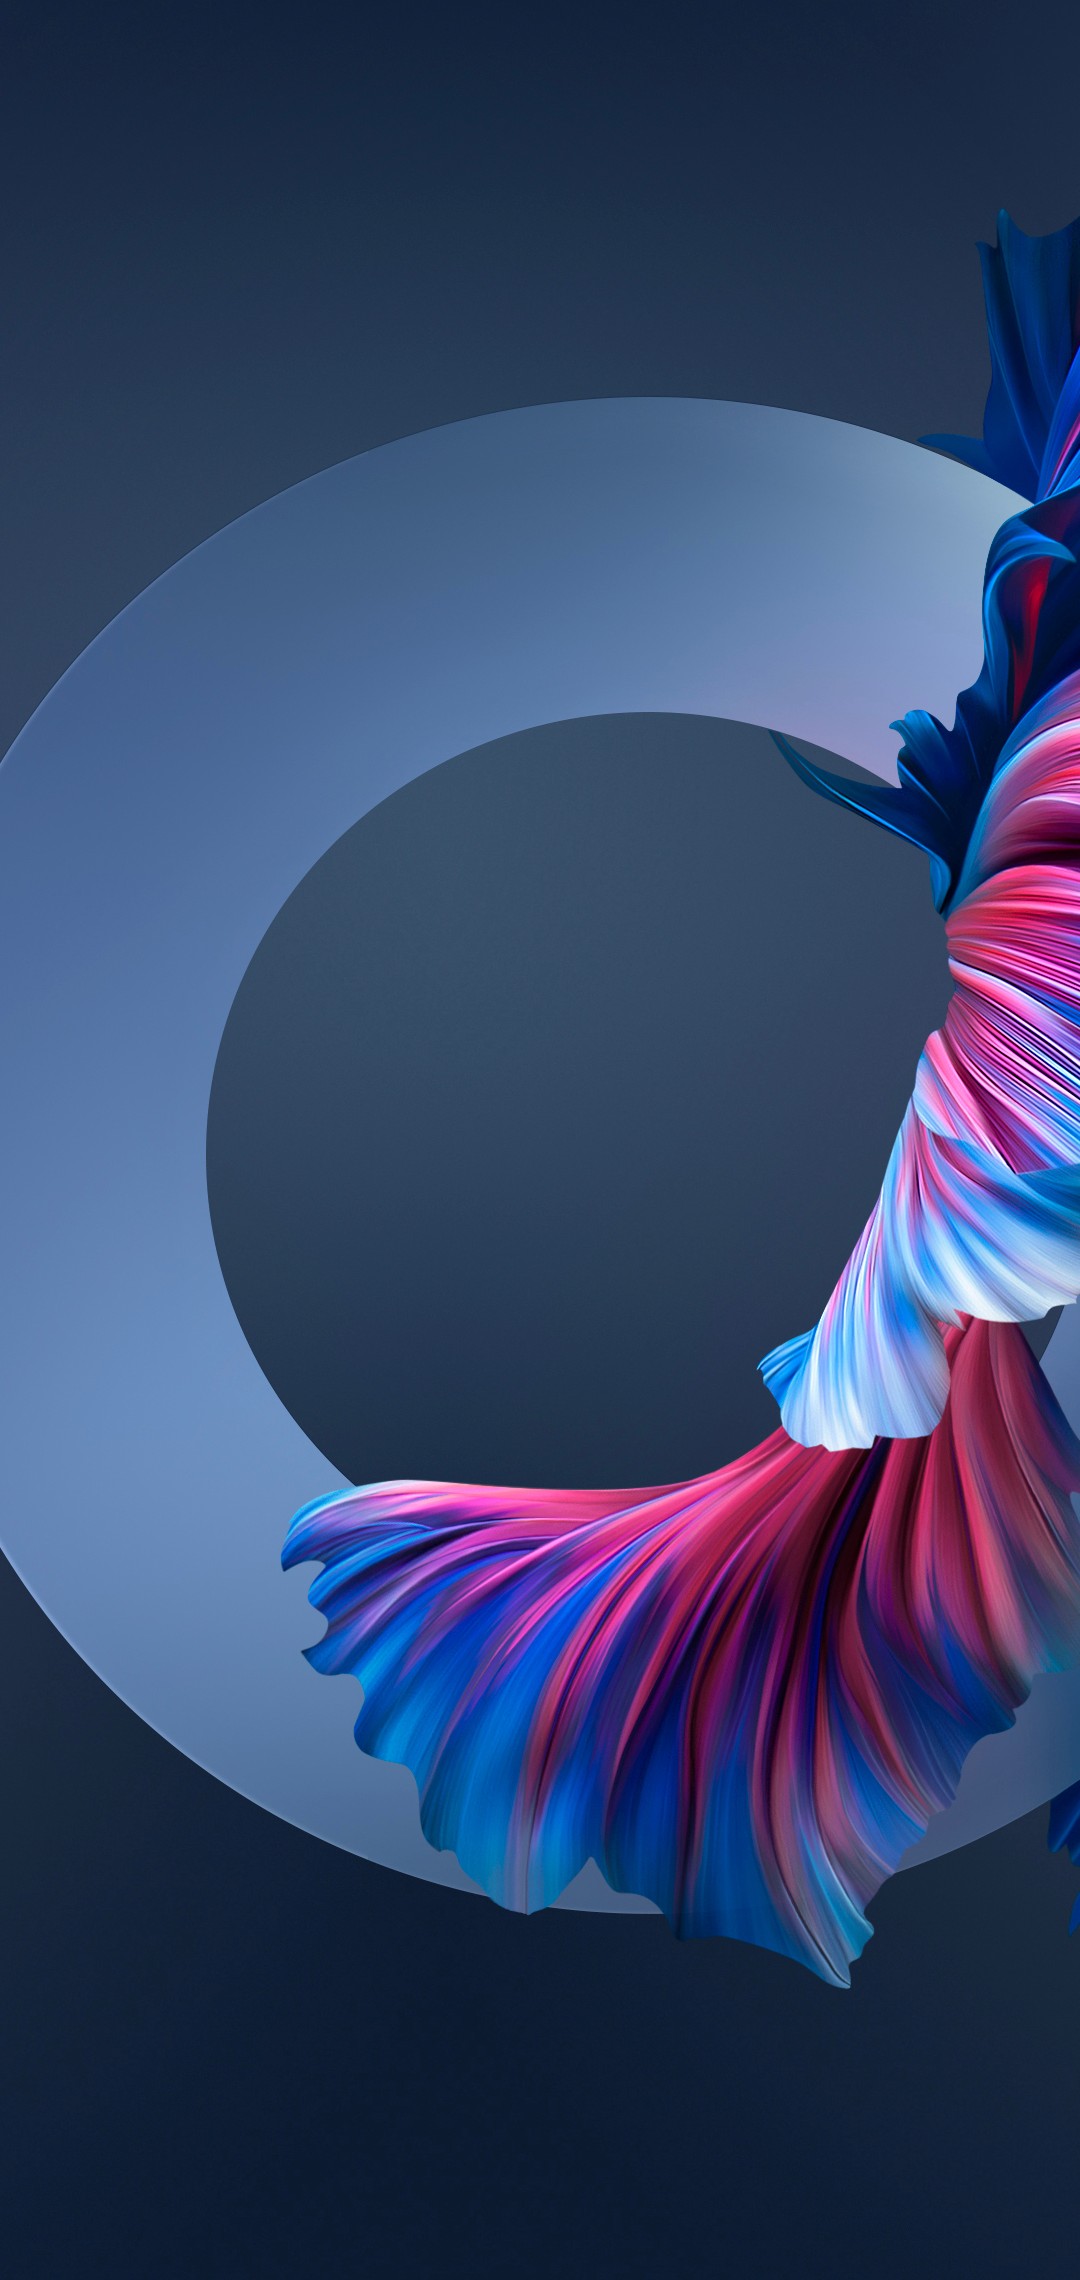 青 ピンク 金魚の尾 綺麗 Oppo R15 Pro Androidスマホ壁紙 待ち受け スマラン